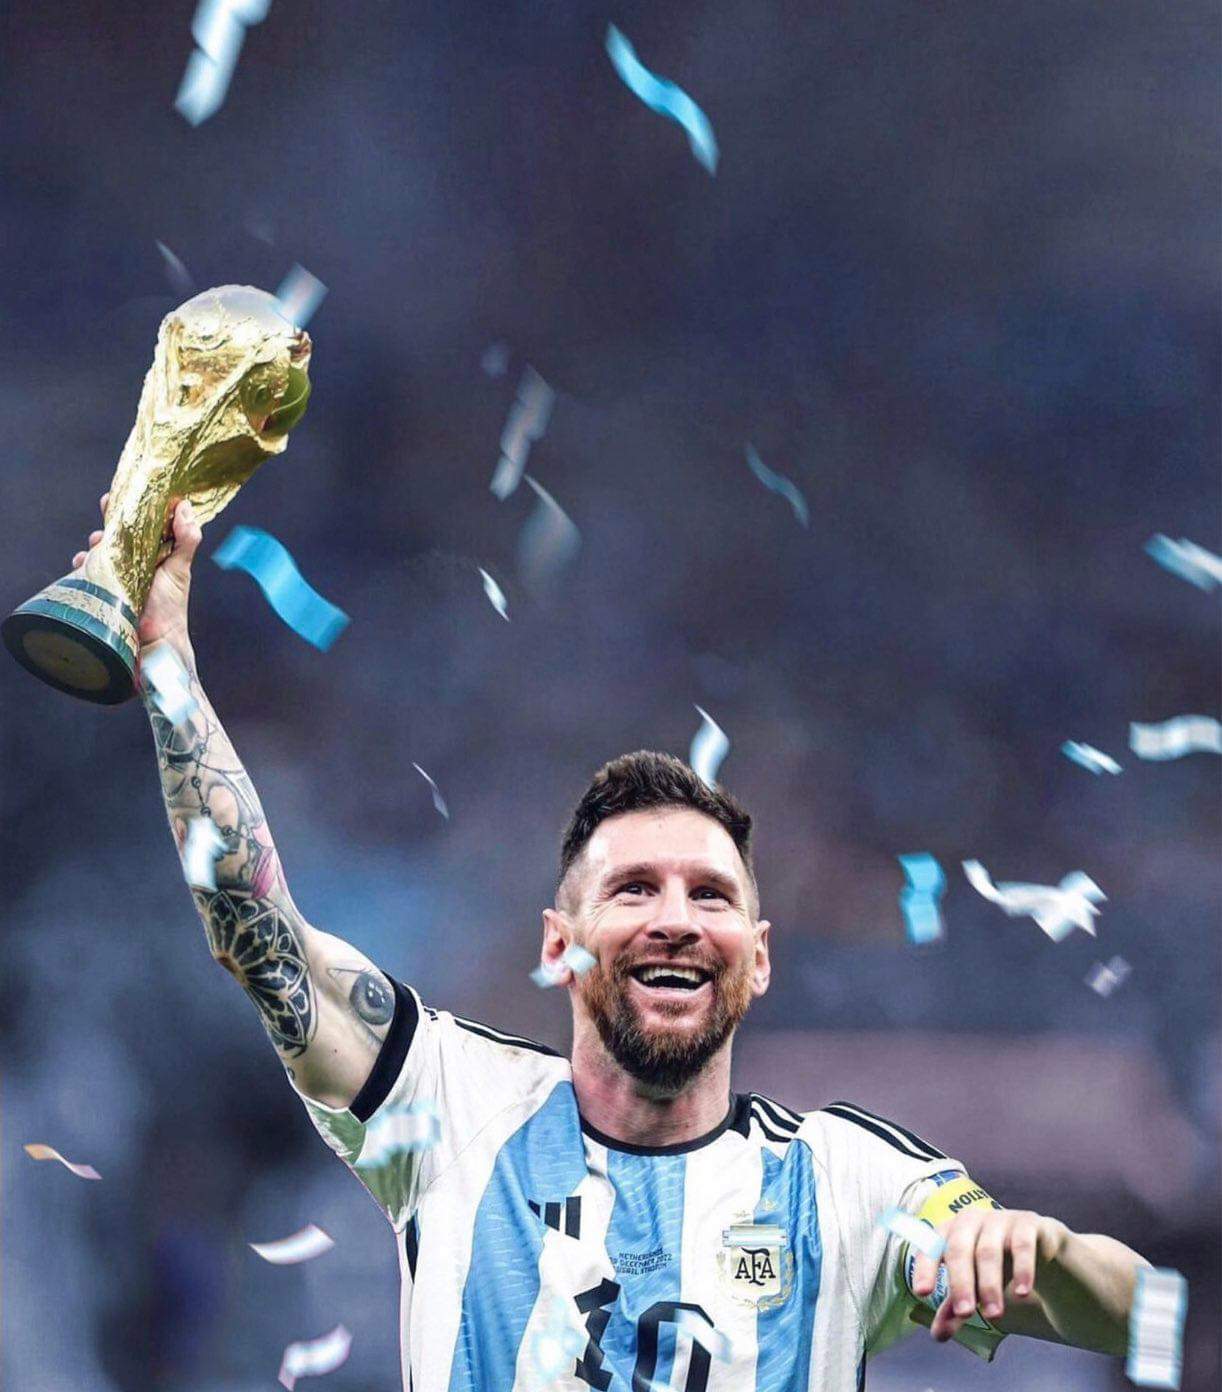 Lionel Messi, 2022/23! 🇦🇷

👕 53 trận đấu
⚽️ 38 bàn thắng
🅰️ 25 pha kiến tạo
🌟 Cầu thủ xuất sắc nhất giải đấu World Cup
🏆 World Cup
🏆 Giải VĐQG 1
🏆 Siêu Cúp Pháp
🏆 Cầu thủ nam xuất sắc nhất FIFA
🏆 Laureus Vận động viên của năm
📝 Cầu thủ được vinh danh nhiều nhất mọi thời đại (43 danh hiệu)